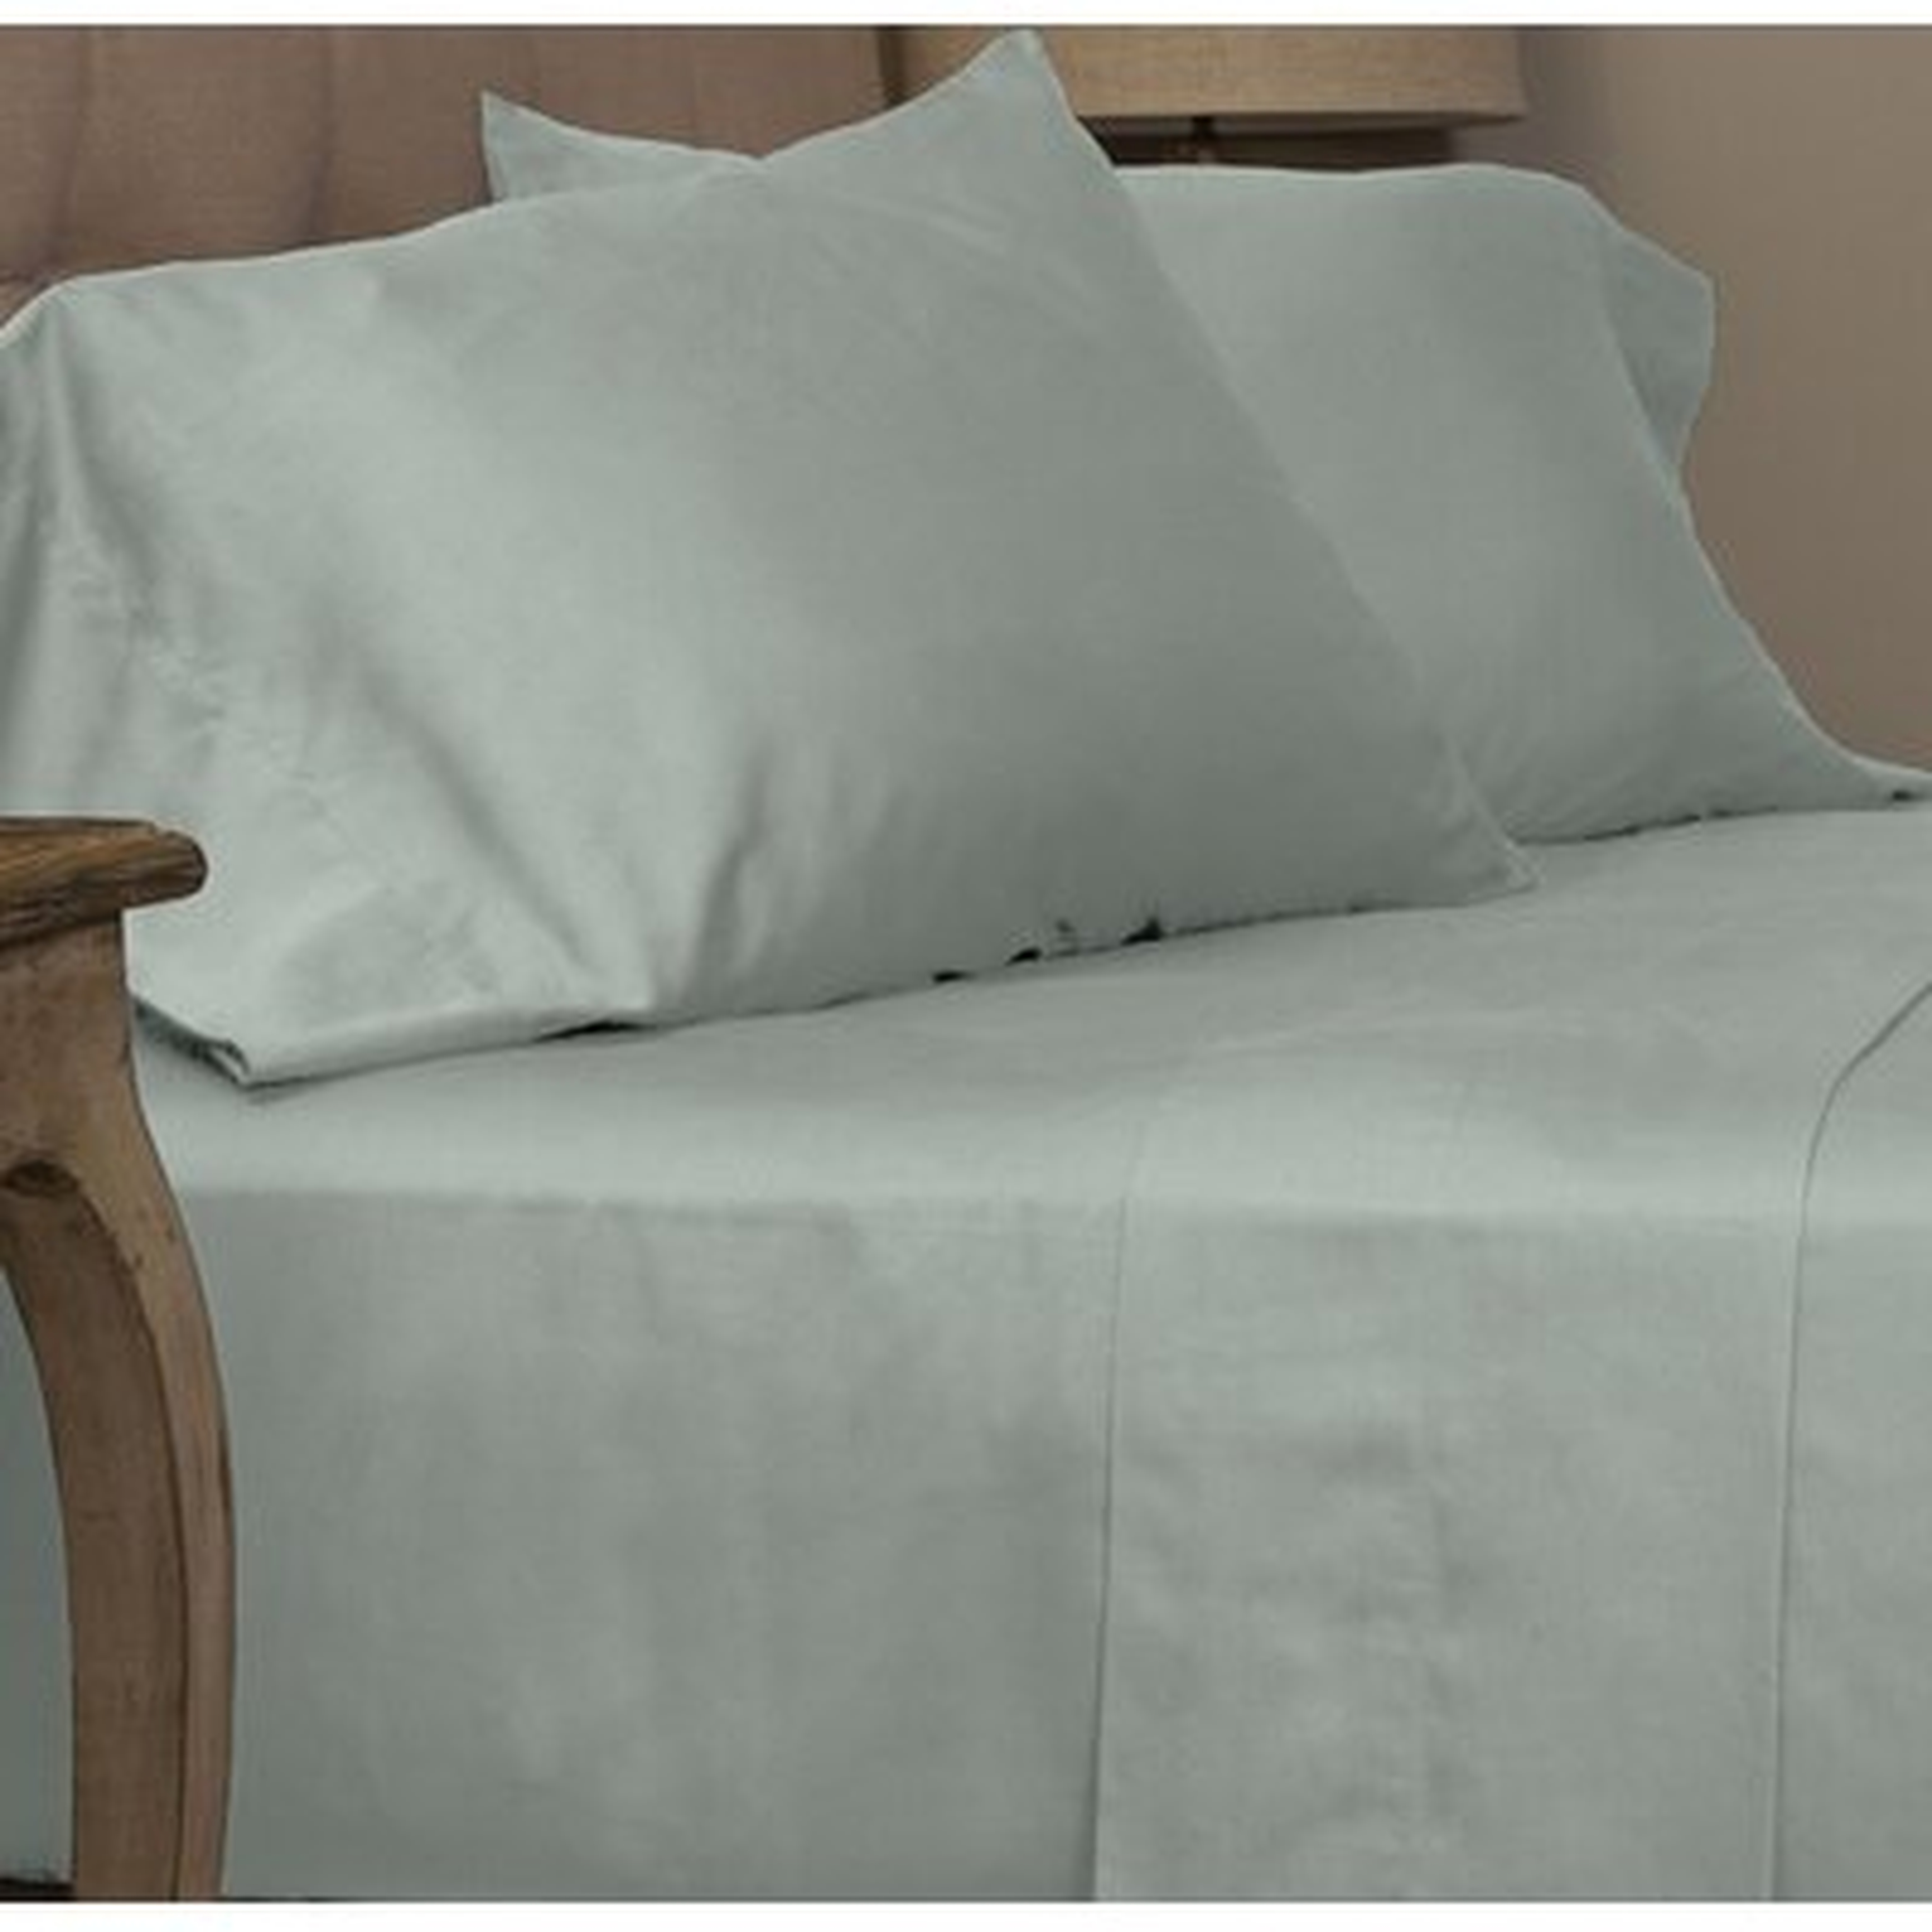 Dimmick Cotton Sateen Sea Glass Pillowcase Standard Set - Wayfair